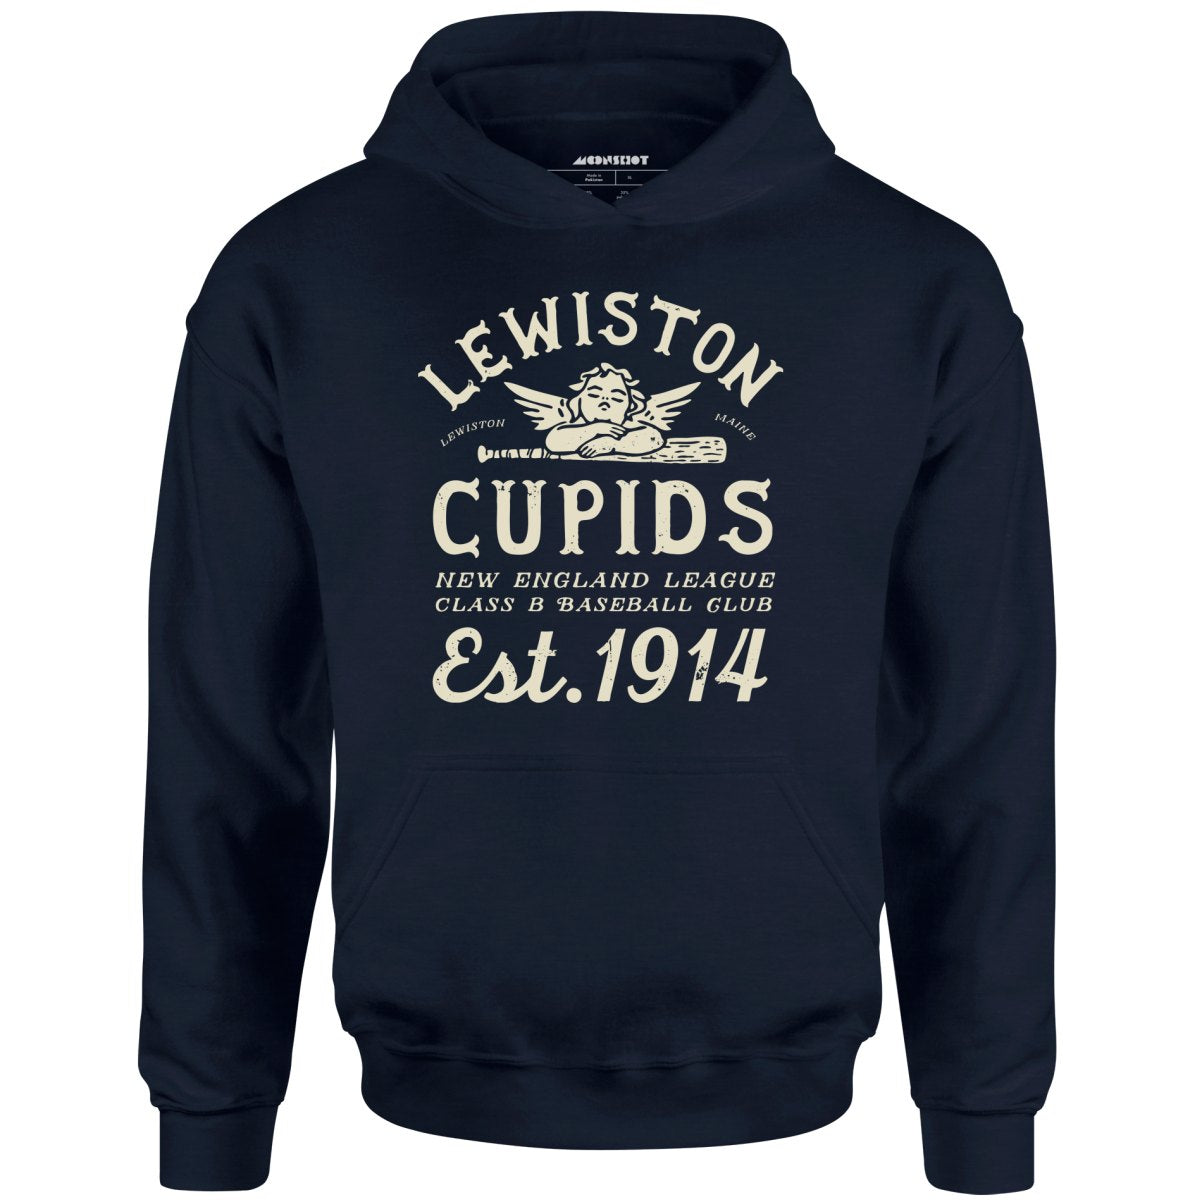 Lewiston Cupids - Maine - Vintage Defunct Baseball Teams - Unisex Hoodie